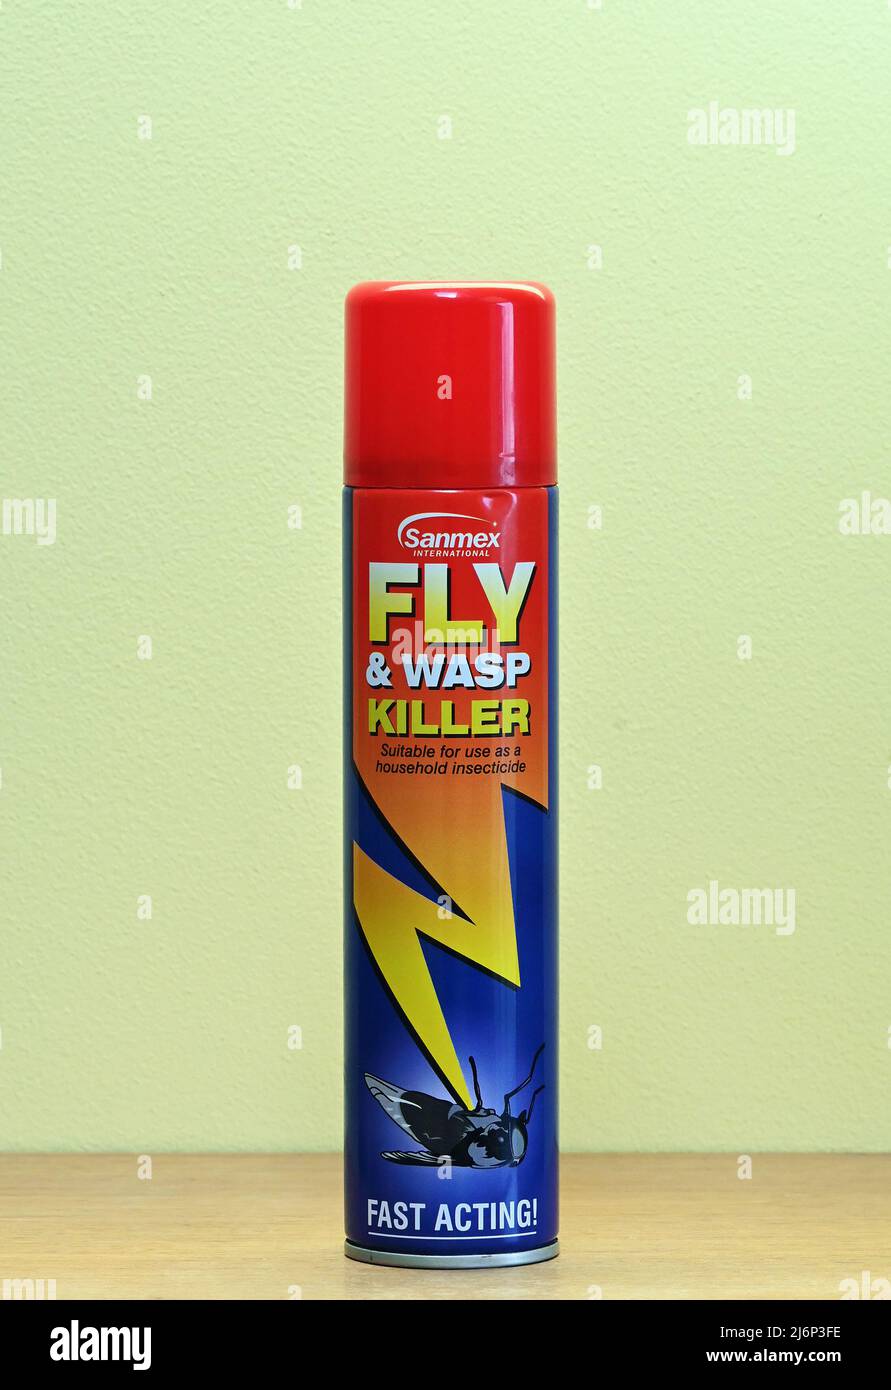 Sanmex International. Fly & Wasp Killer. Adatto per uso come insetticida domestico. Ad azione rapida! Bomboletta spray. Foto Stock